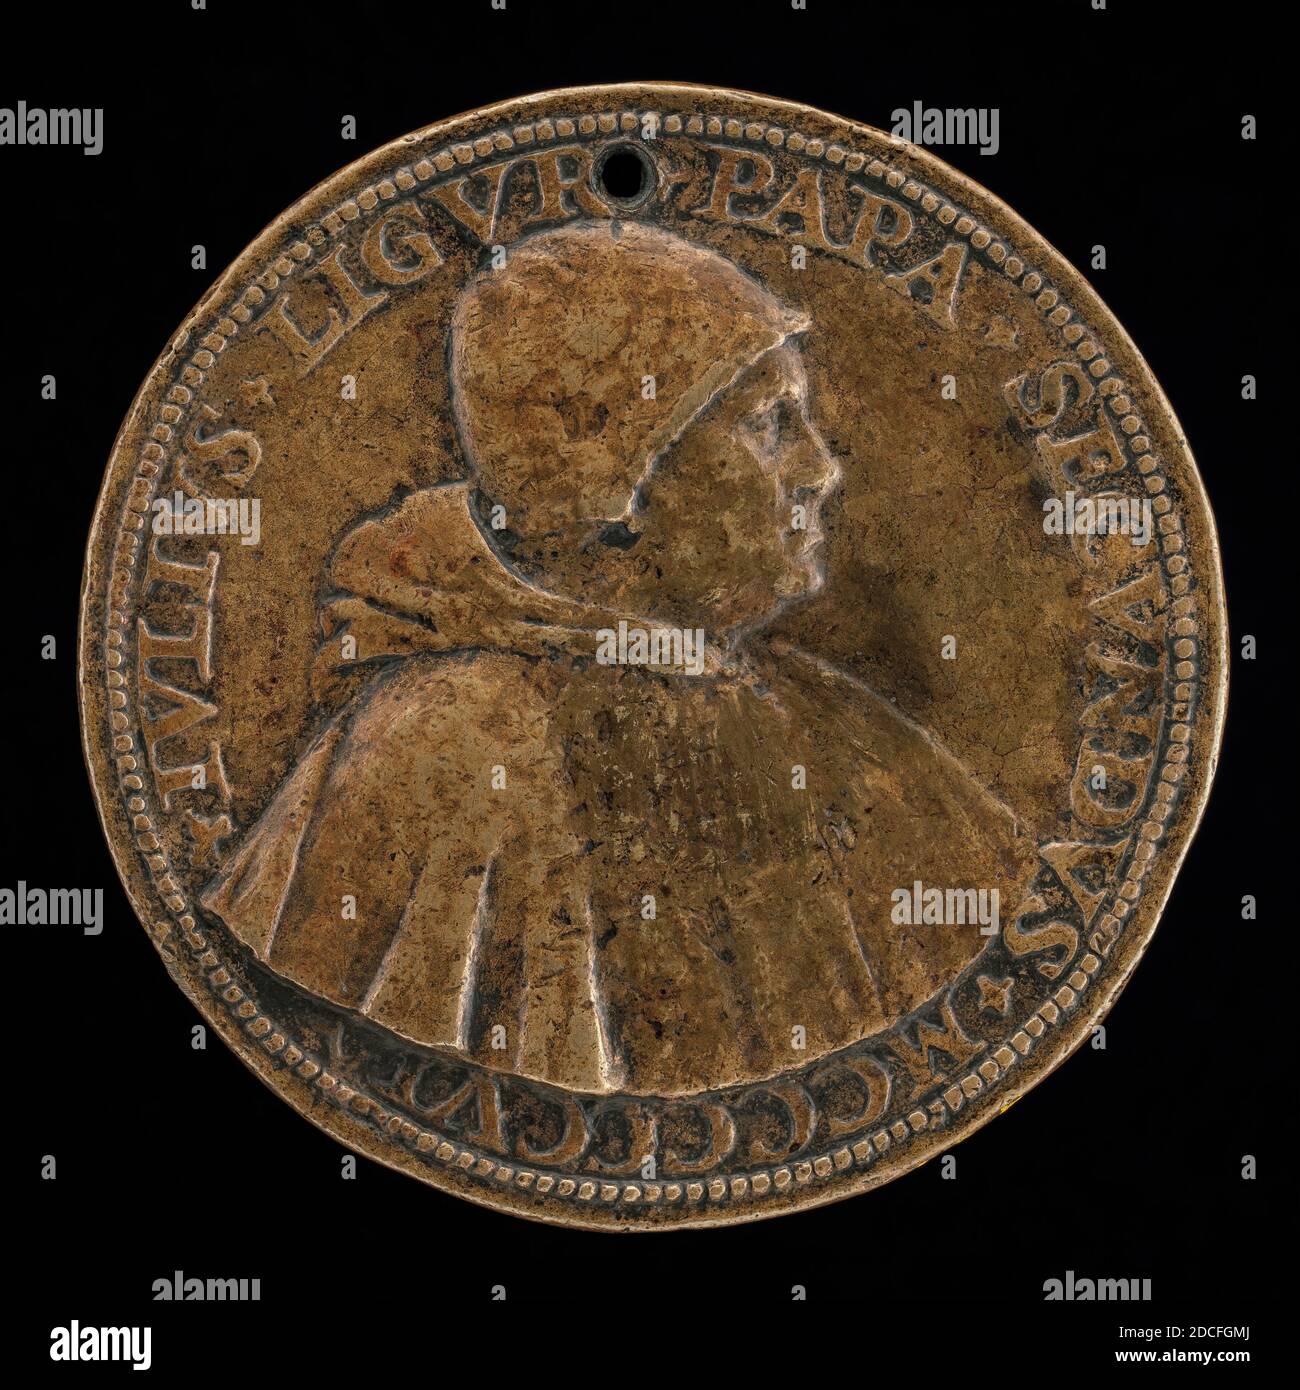 Caradosso Foppa, (artista), milanese, c. 1452 - 1526/1527, Giulio II (Giuliano della Rovere, 1443-1513), Papa 1503, c.. 1506, bronzo, totale (diametro): 5.68 cm (2 1/4 in.), peso lordo: 60.99 gr (0.134 lb.), asse: 6:00 Foto Stock